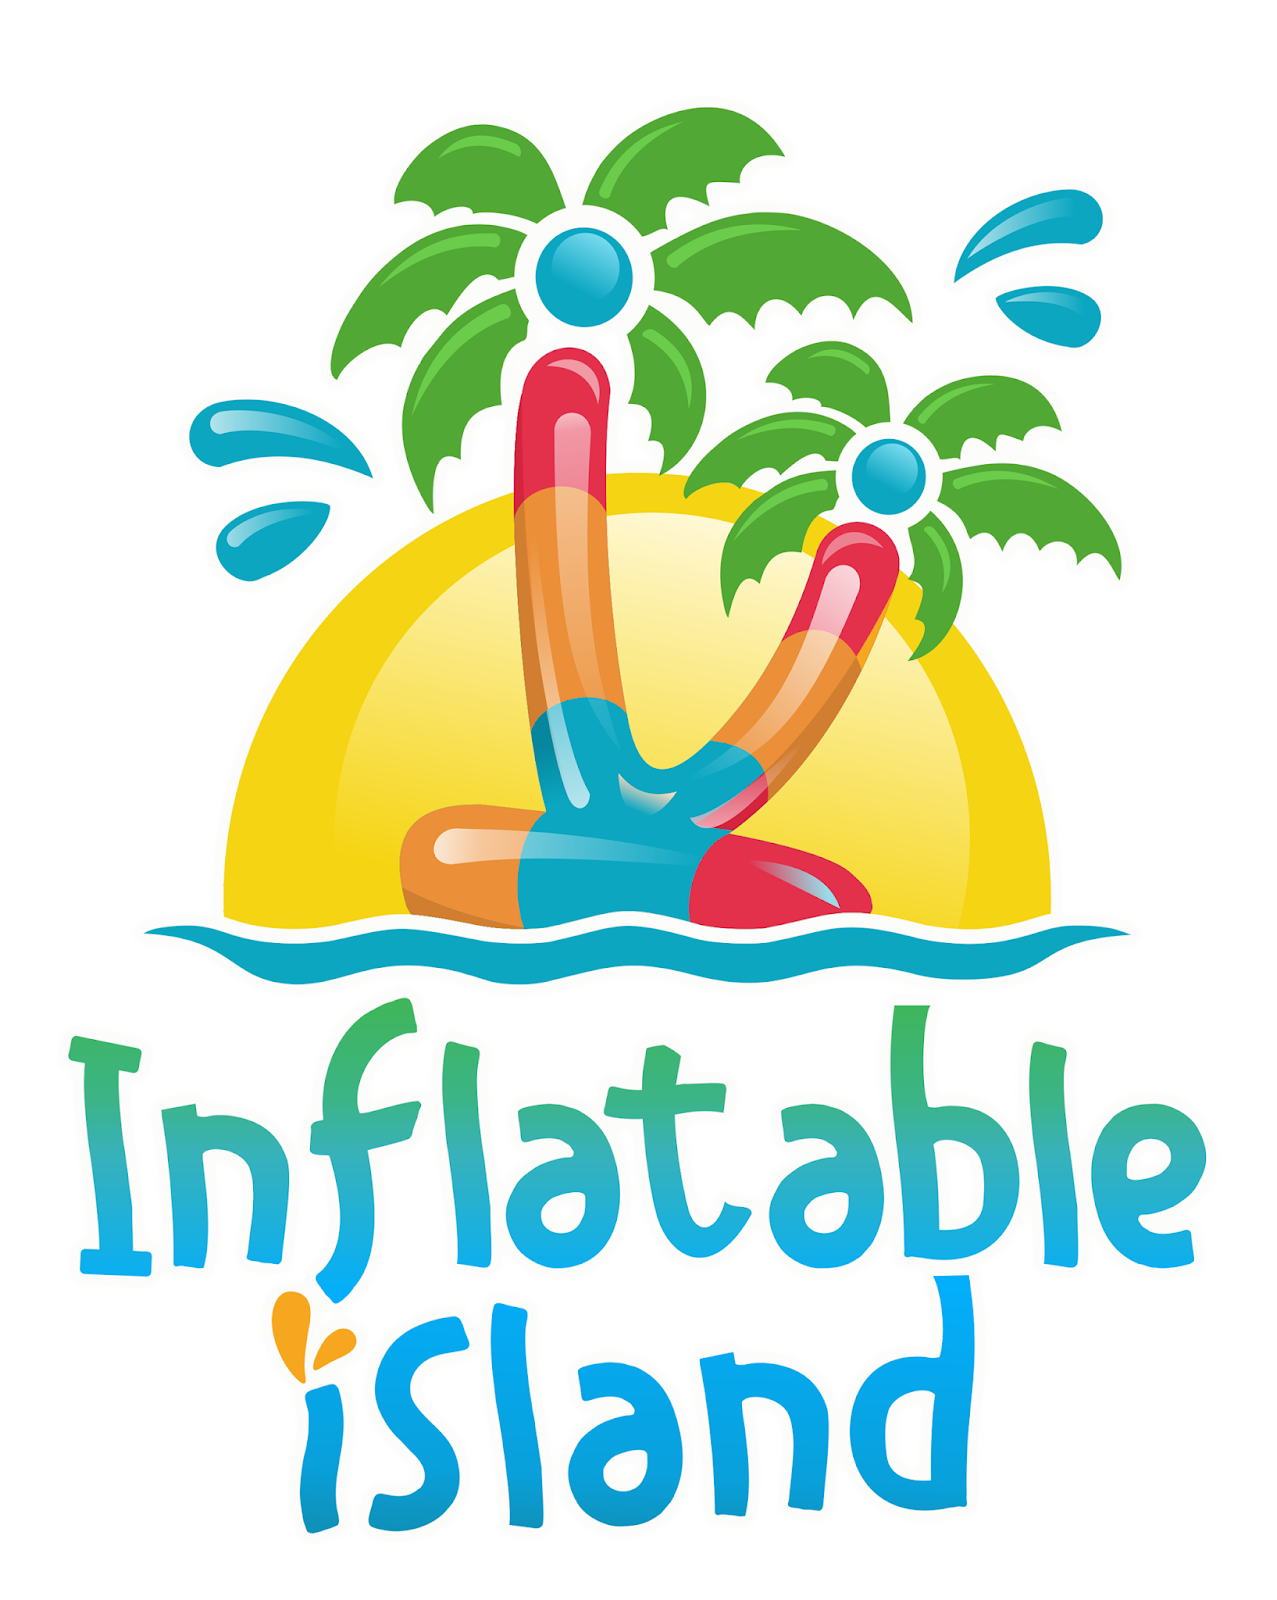 Logo islands. Логотип остров. Inflatable Island. Логотип острова отдыха и развлечений. Остров PNG.